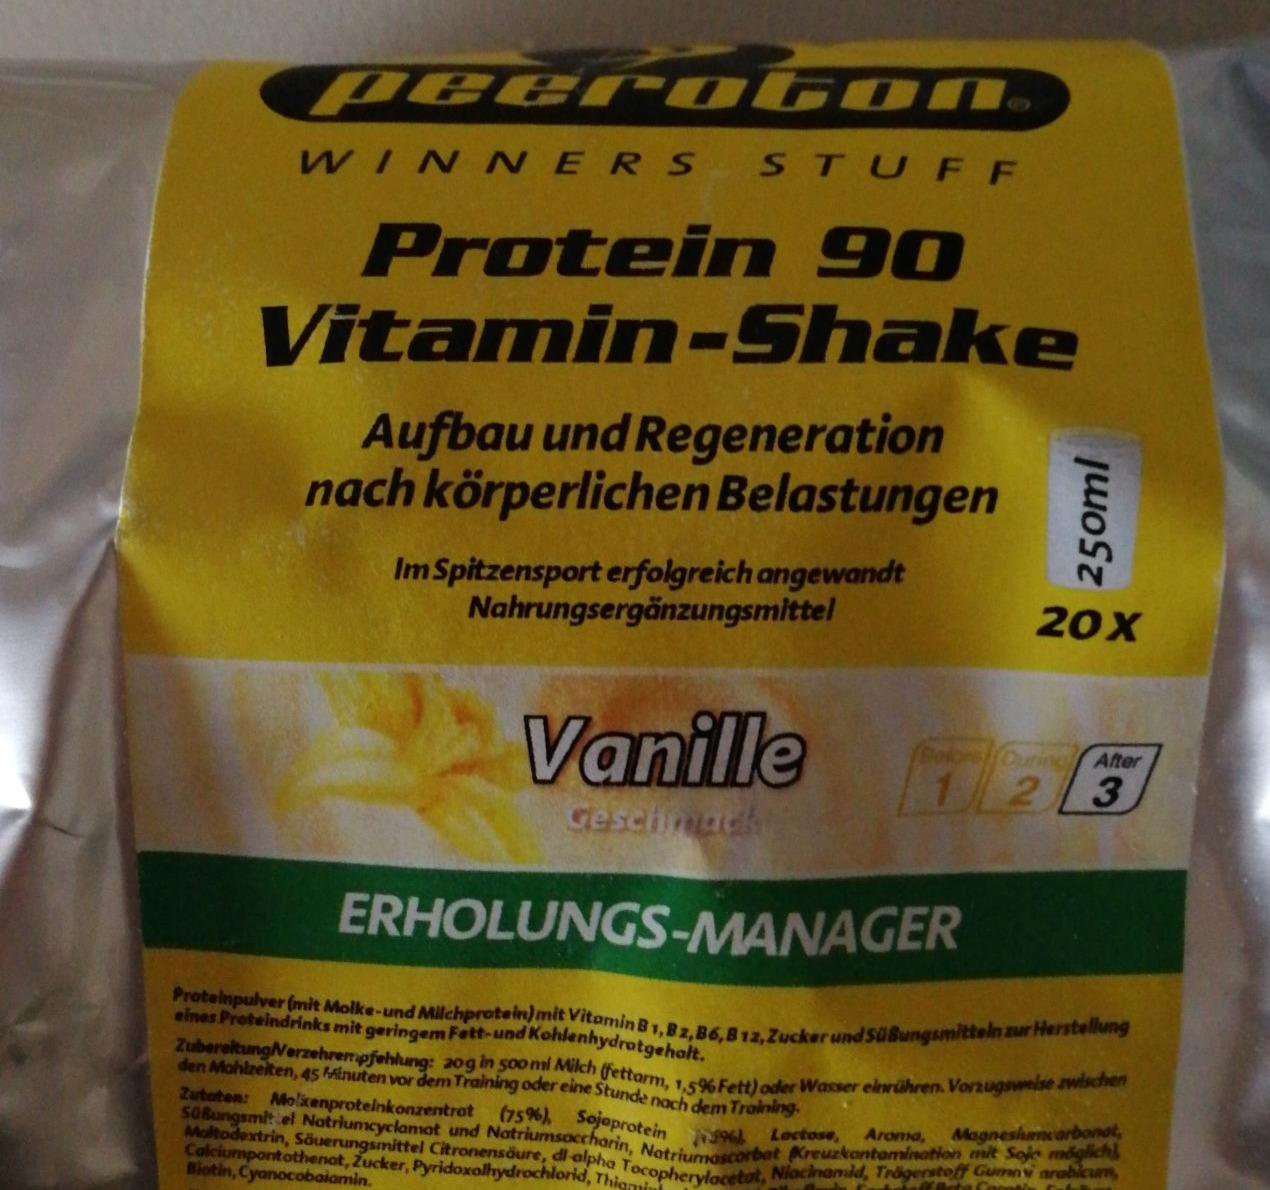 Fotografie - Protein 90 Vitamin - Shake Vanille Peeroton